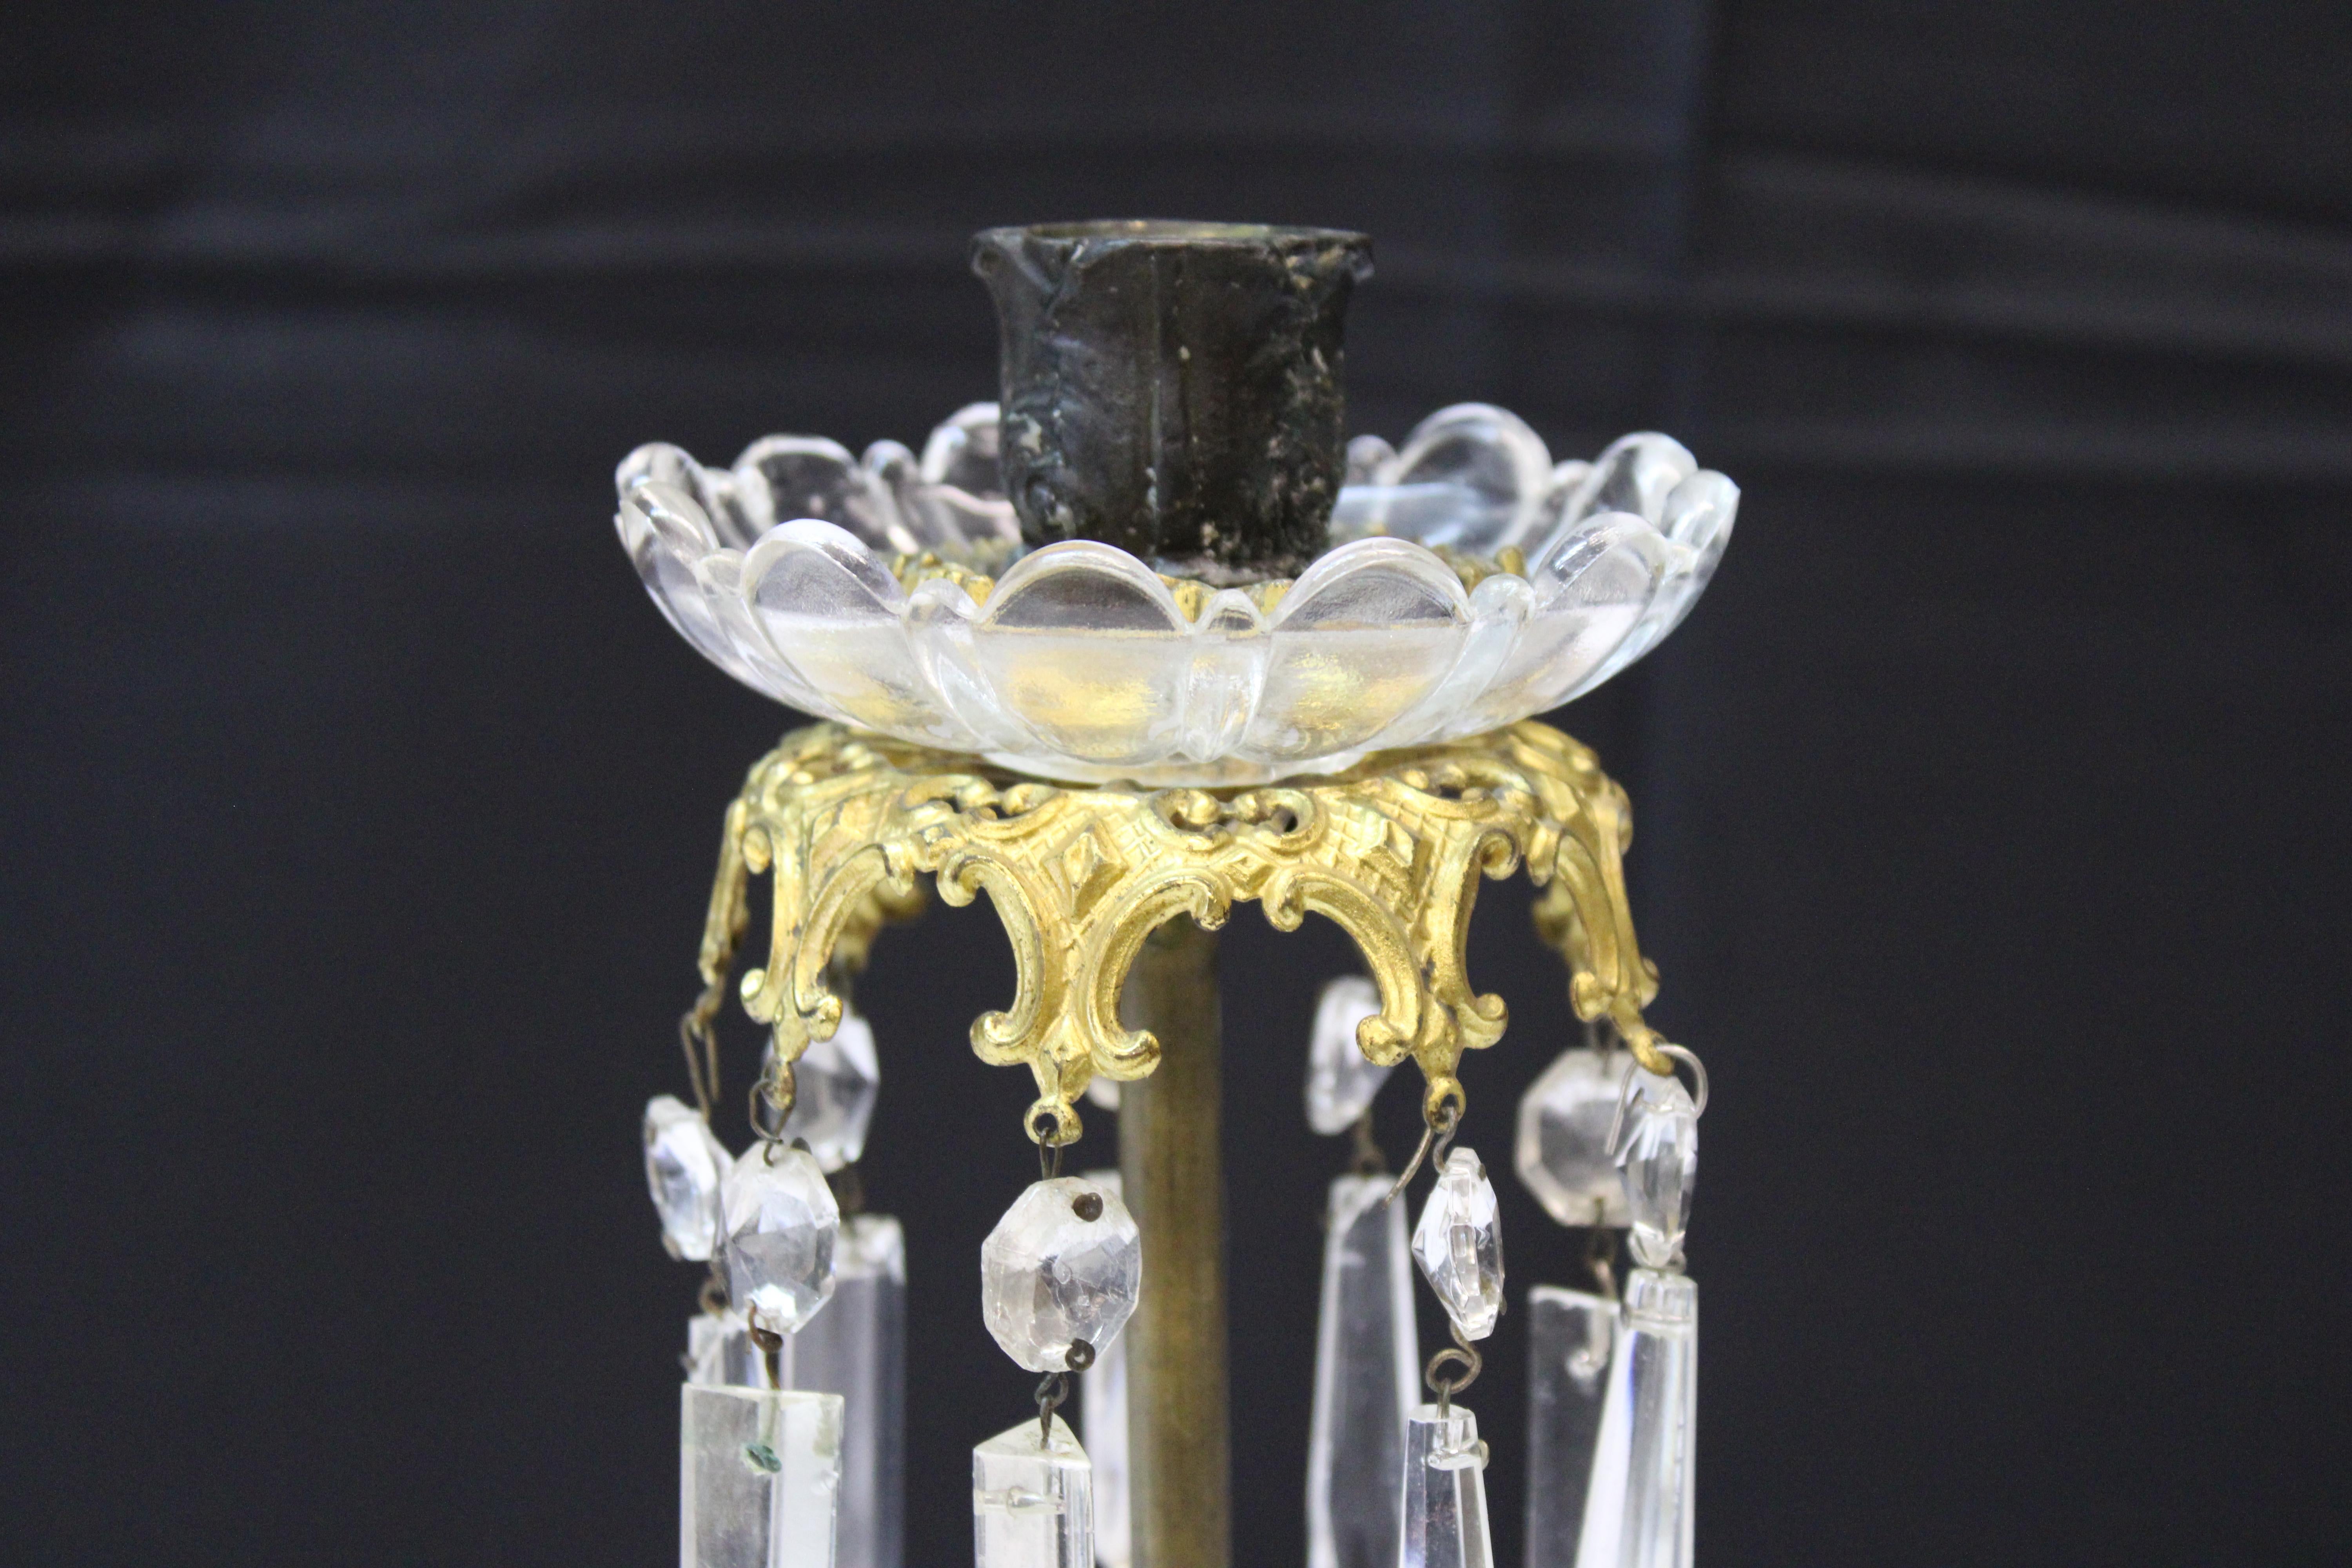 Pr viktorianischen Glas & Kristall Metall Kerzenhalter mit vergoldeten Giraffen.